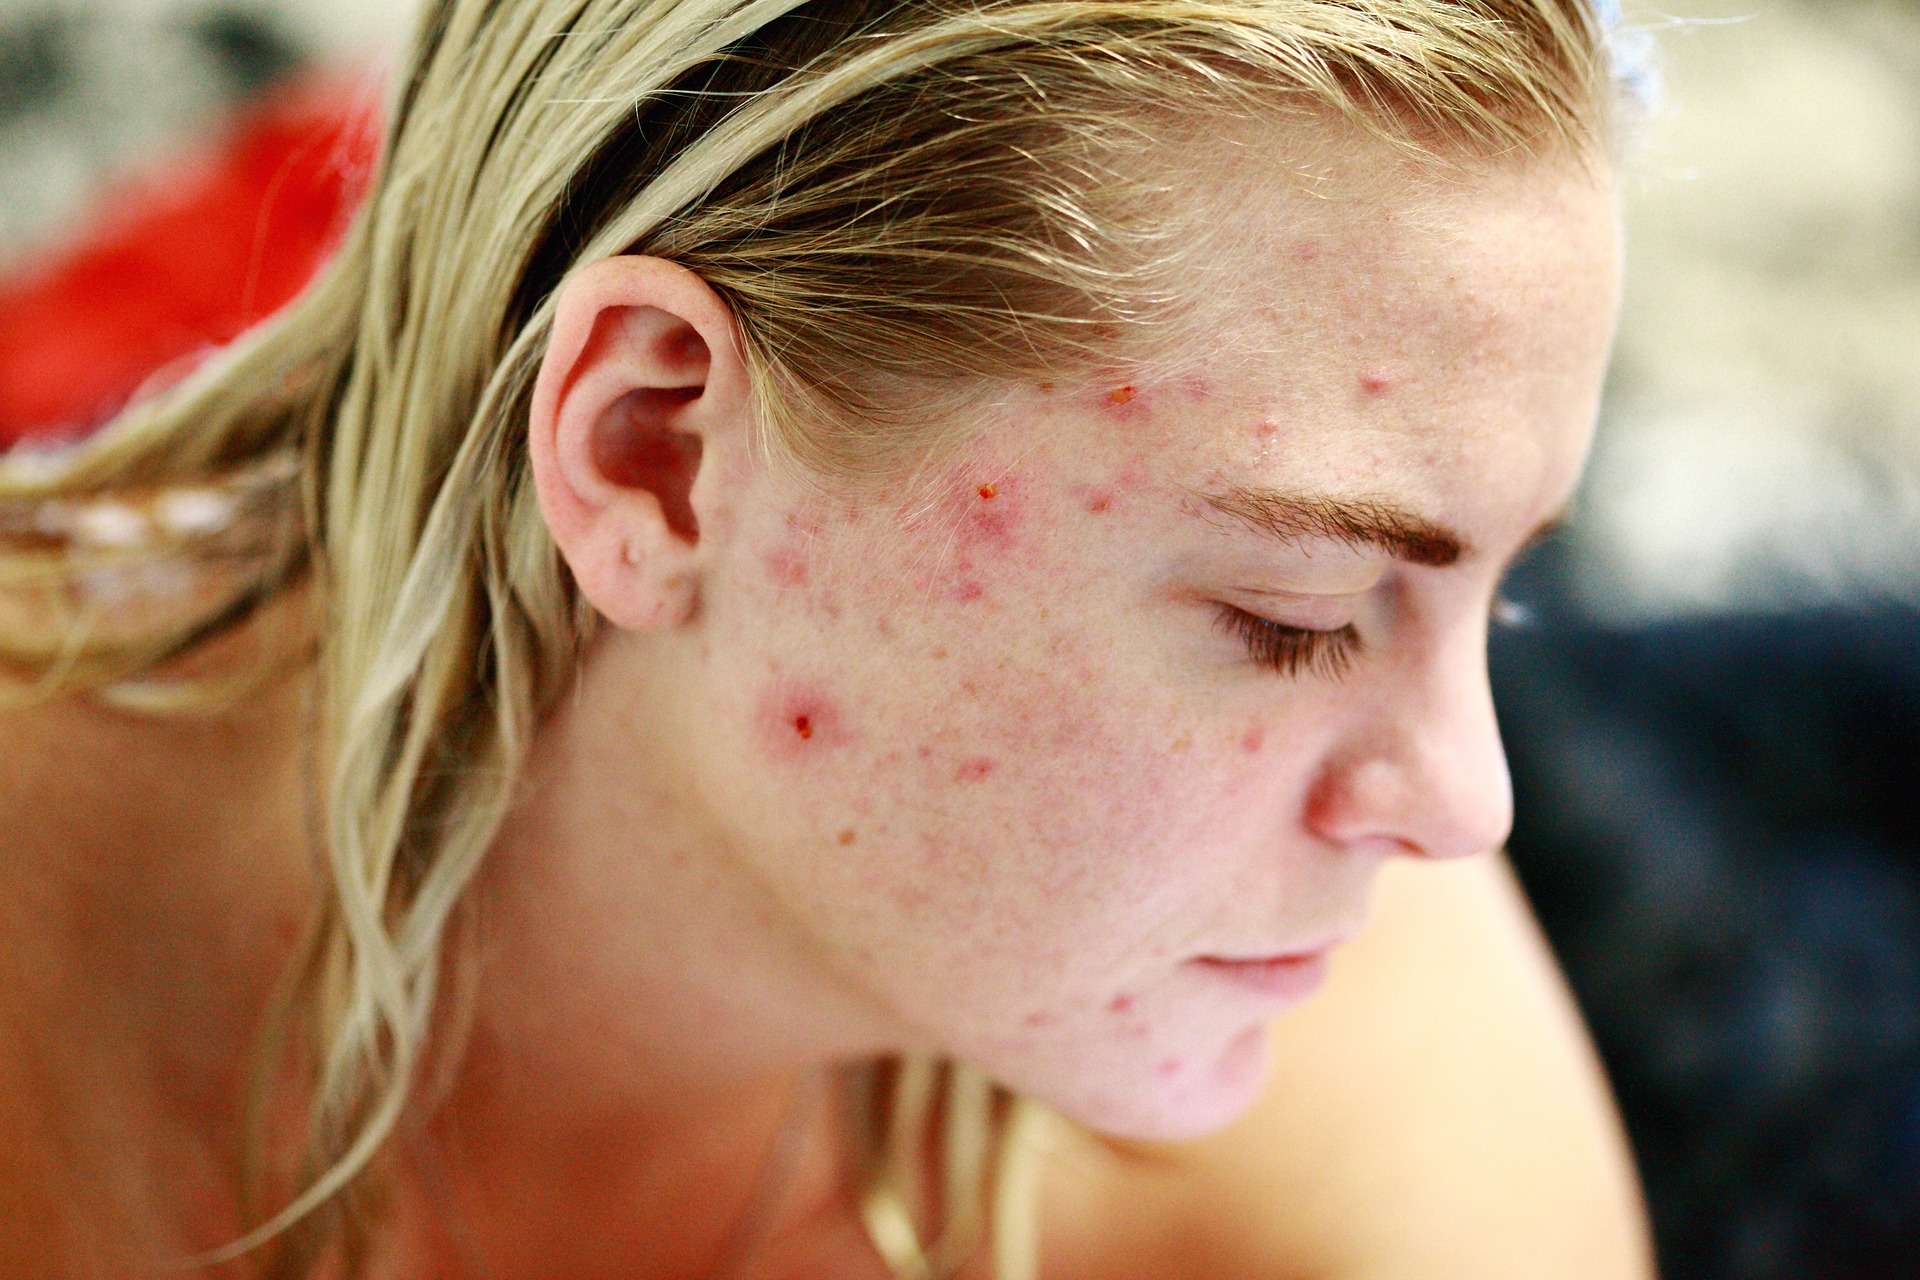 Le traitement courant de l'acné chez les adolescents peut avoir des effets à long terme sur le système squelettique : étude